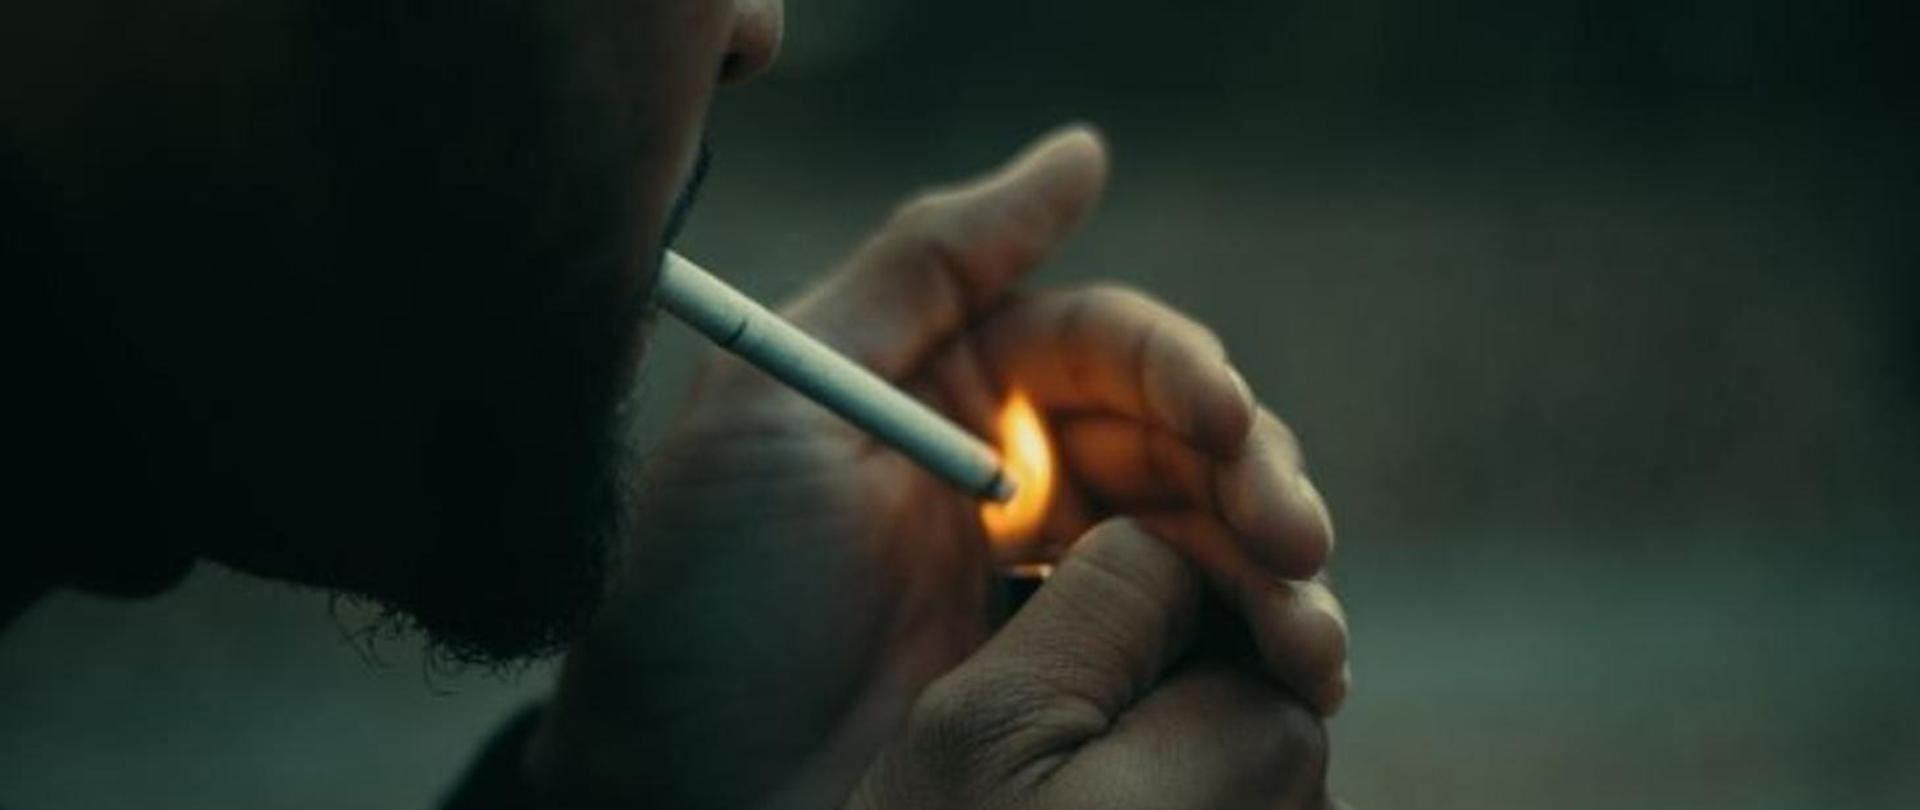 Mężczyzna trzyma zapaloną zapalniczkę i zapala papierosa